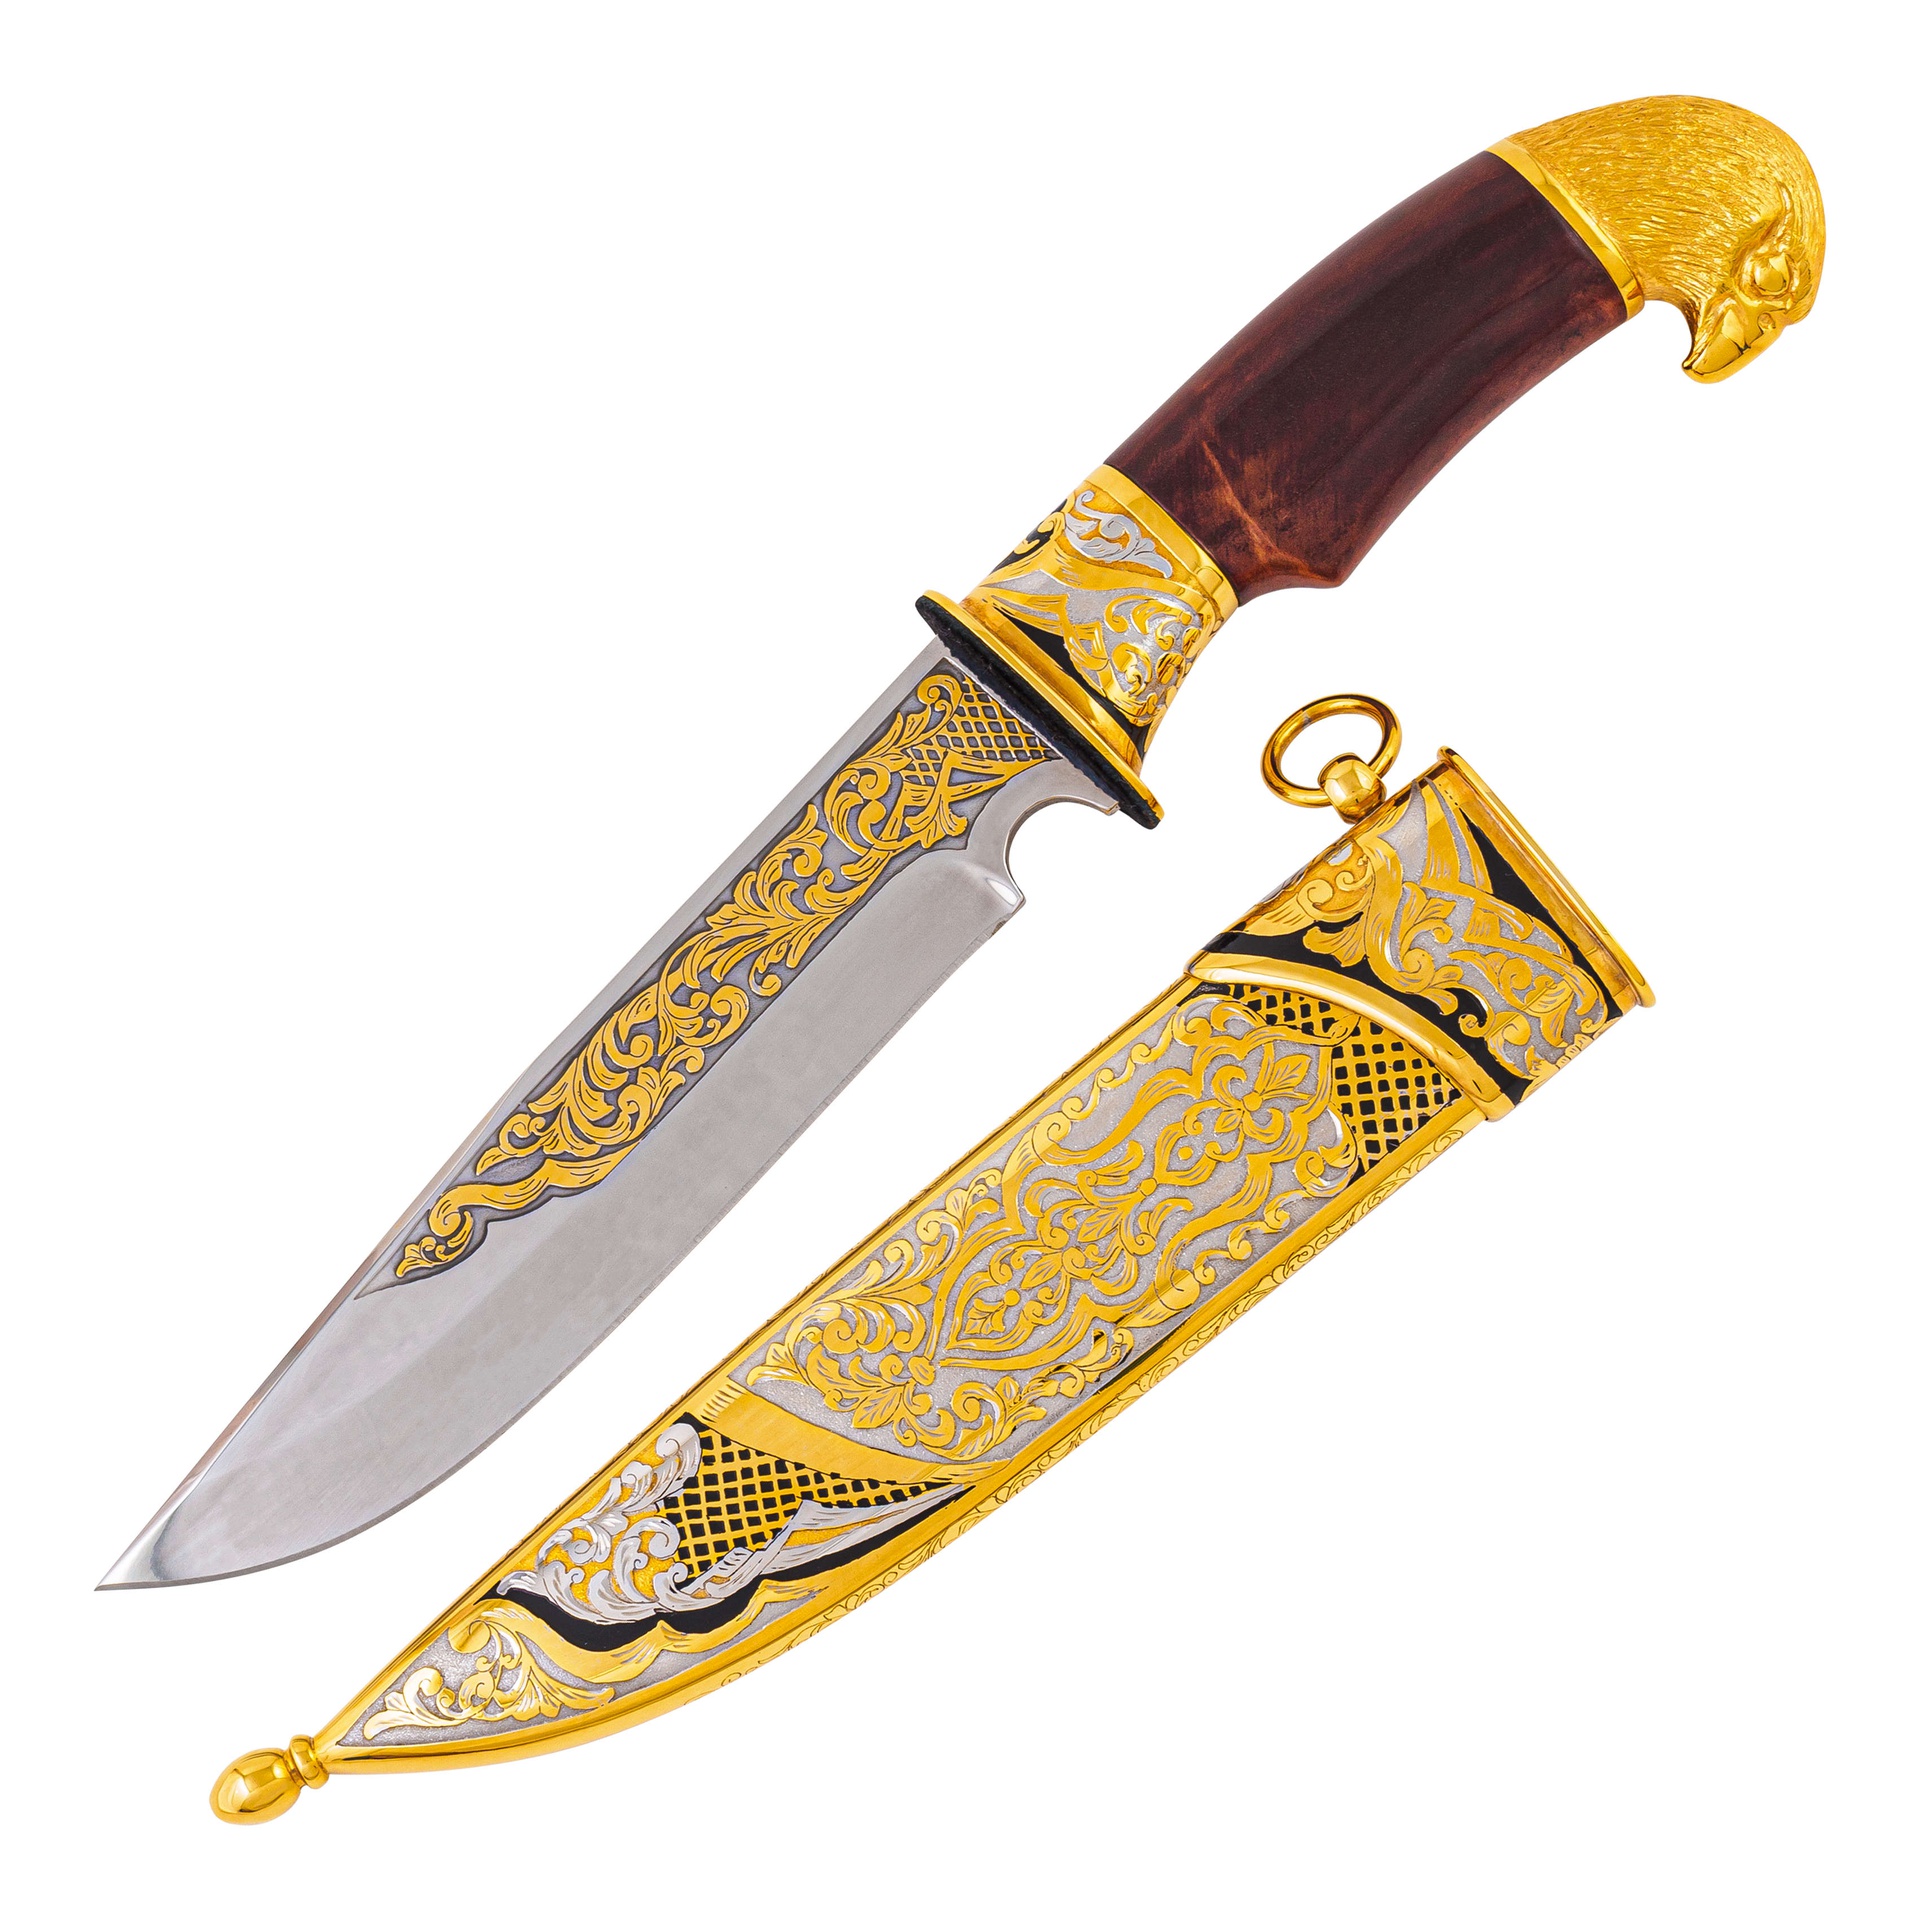 Охотничий набор "Соколиная охота" /фляжка, стопки, нож ЭИ-107 ЦМ/ в подарок охотнику